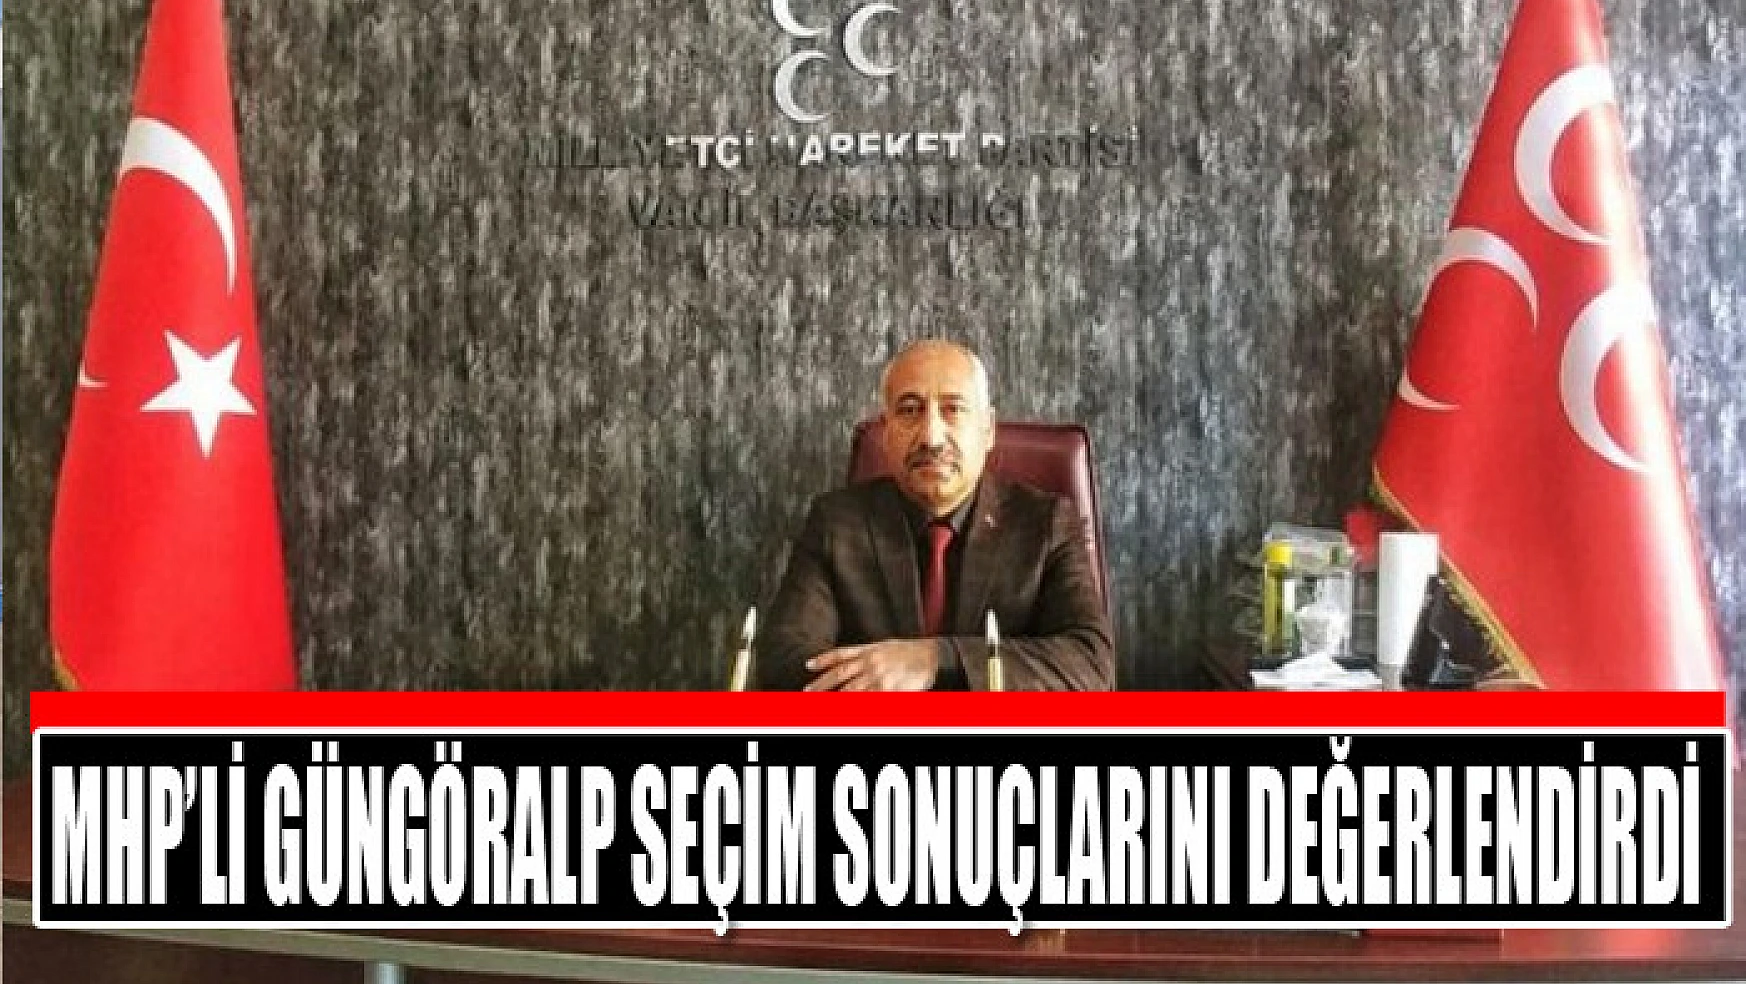 MHP'li Güngöralp seçim sonuçlarını değerlendirdi